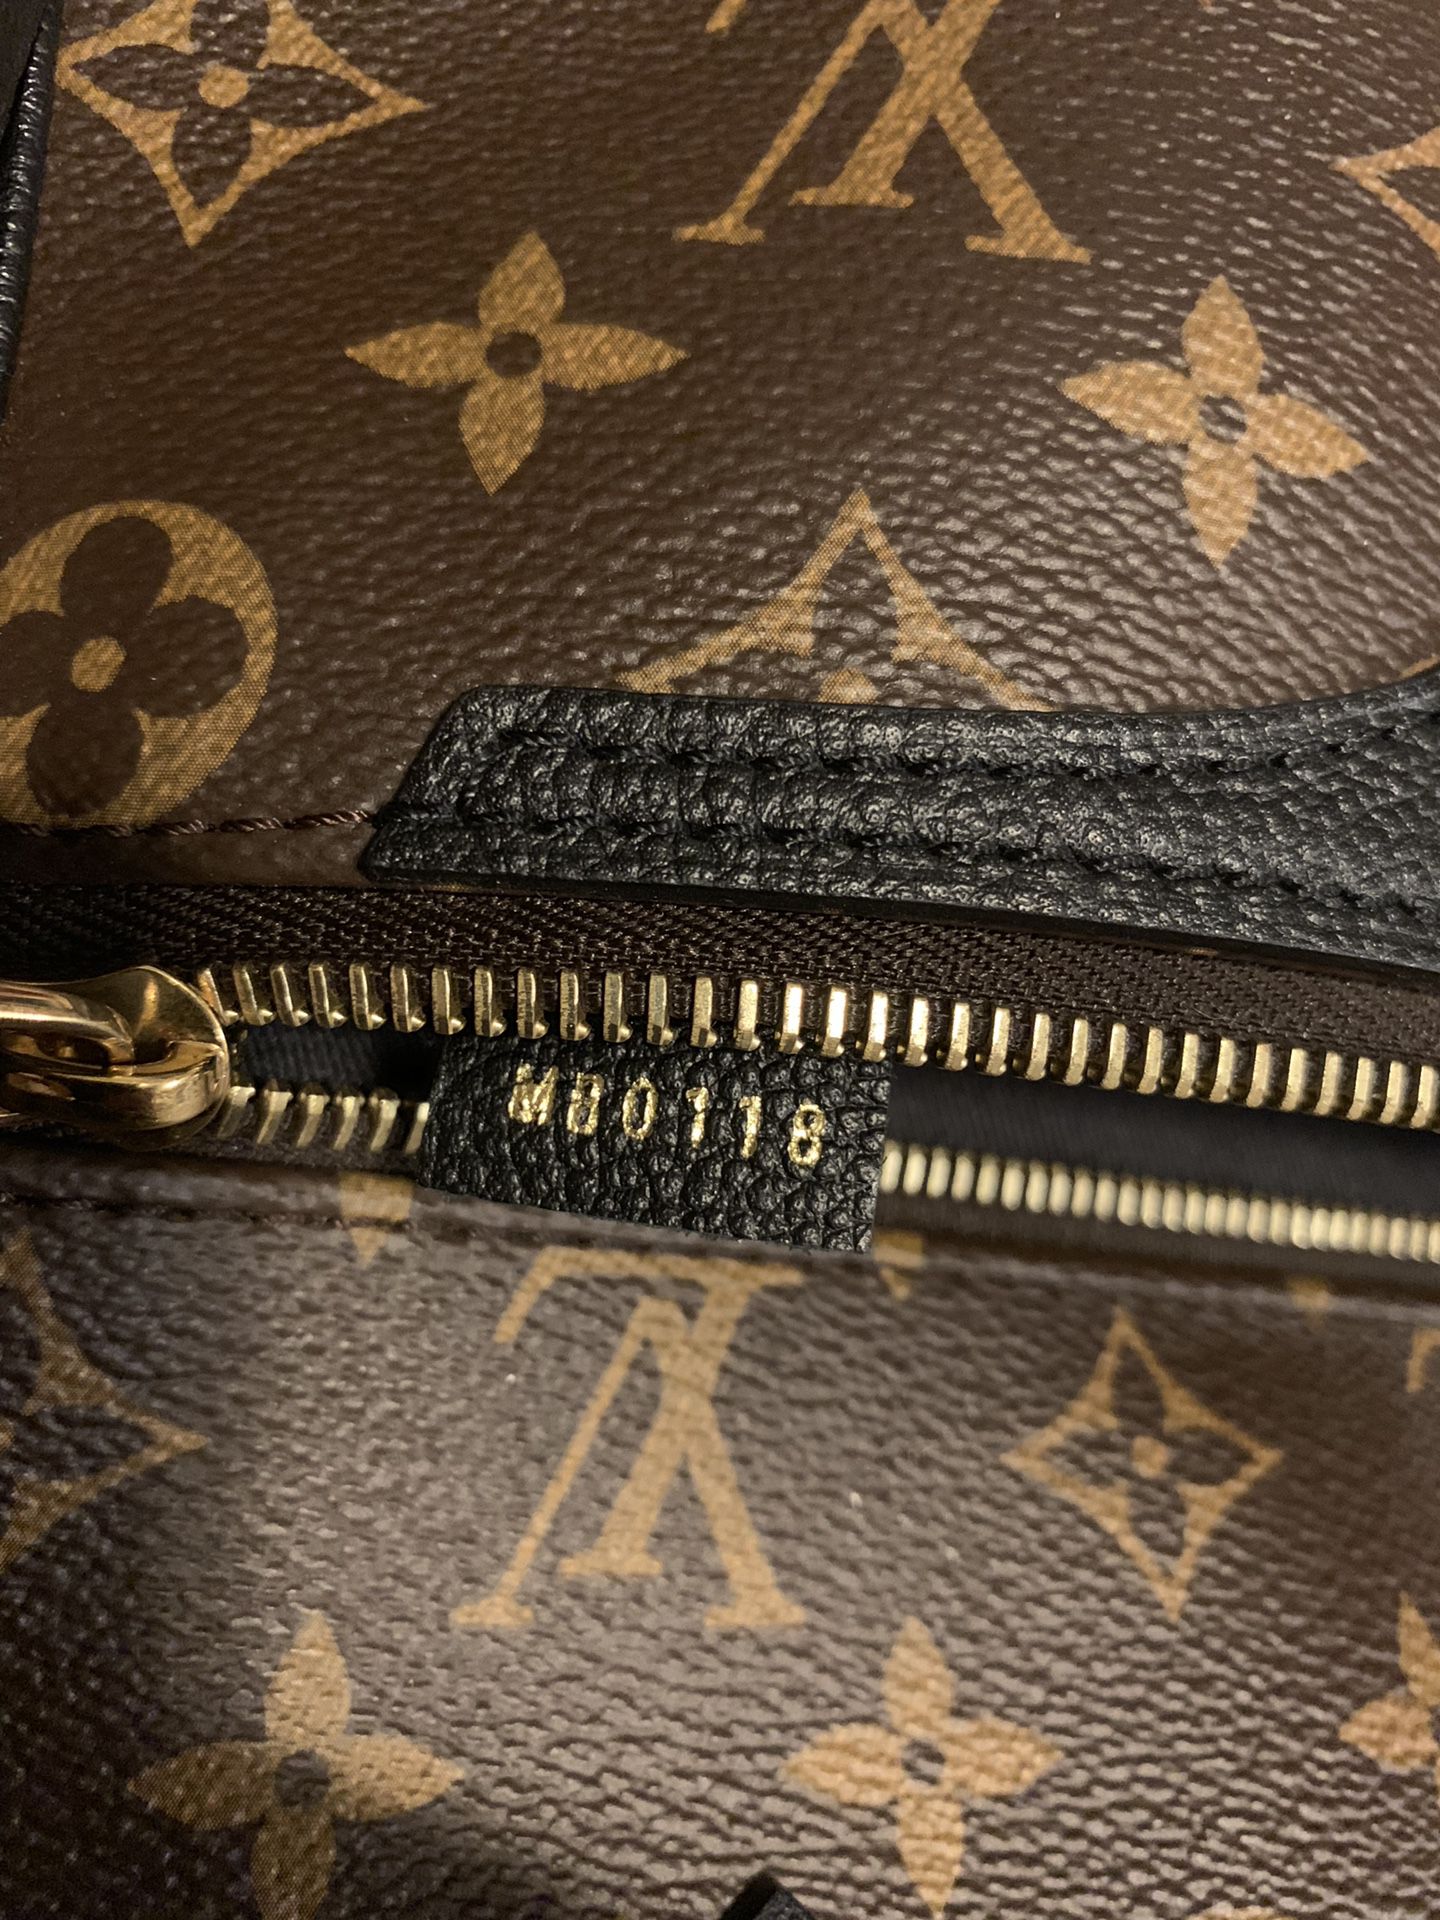 Louis Vuitton, Bags, Sold Tournelle Mm In Noir